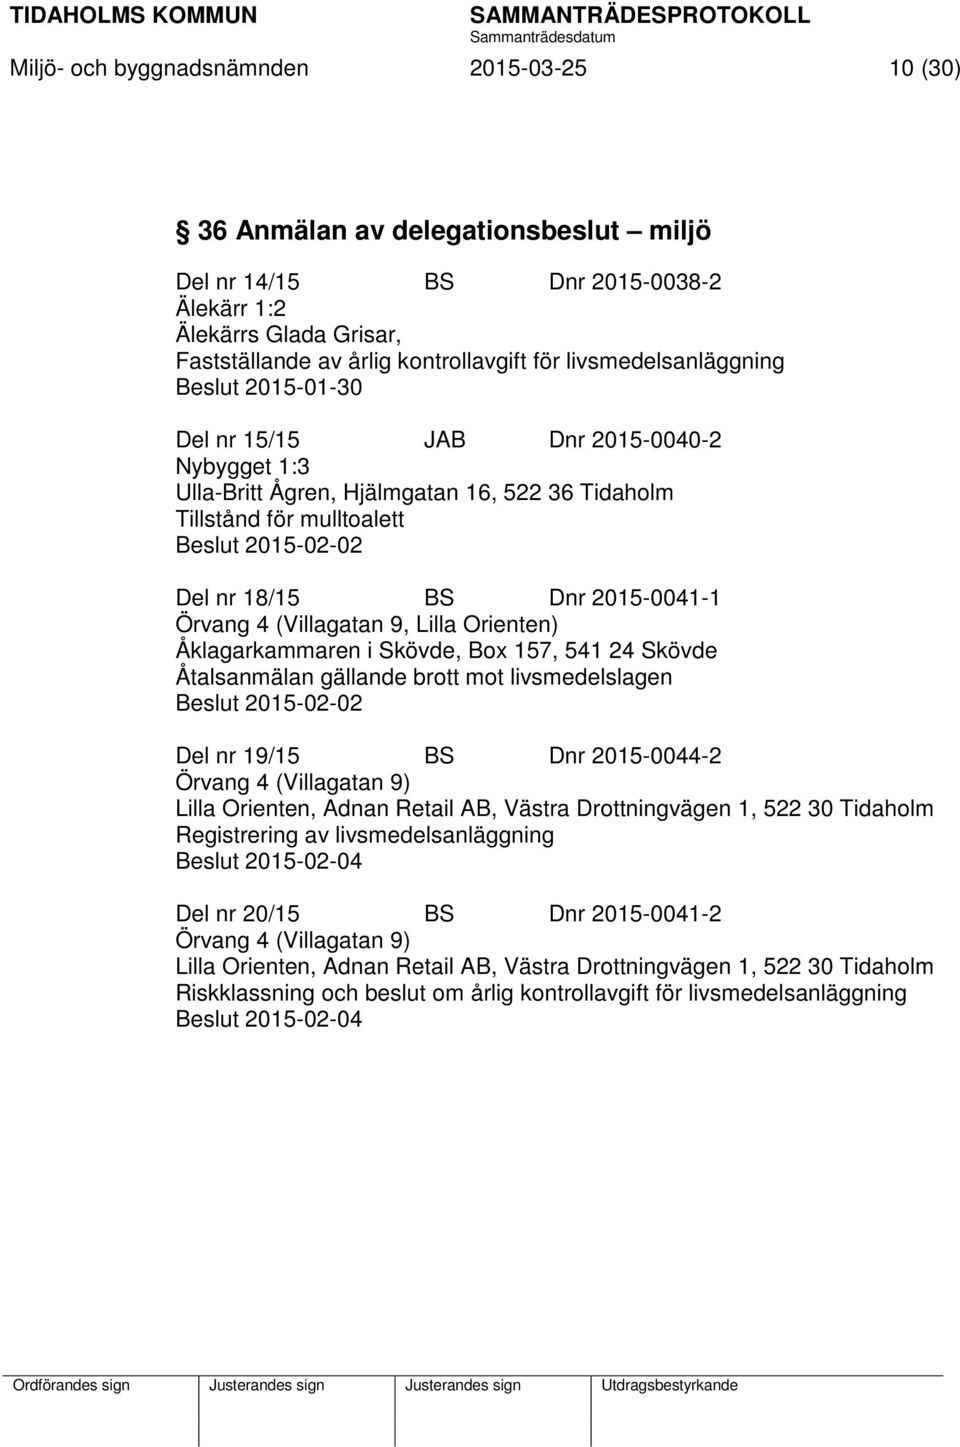 2015-0041-1 Örvang 4 (Villagatan 9, Lilla Orienten) Åklagarkammaren i Skövde, Box 157, 541 24 Skövde Åtalsanmälan gällande brott mot livsmedelslagen Beslut 2015-02-02 Del nr 19/15 BS Dnr 2015-0044-2